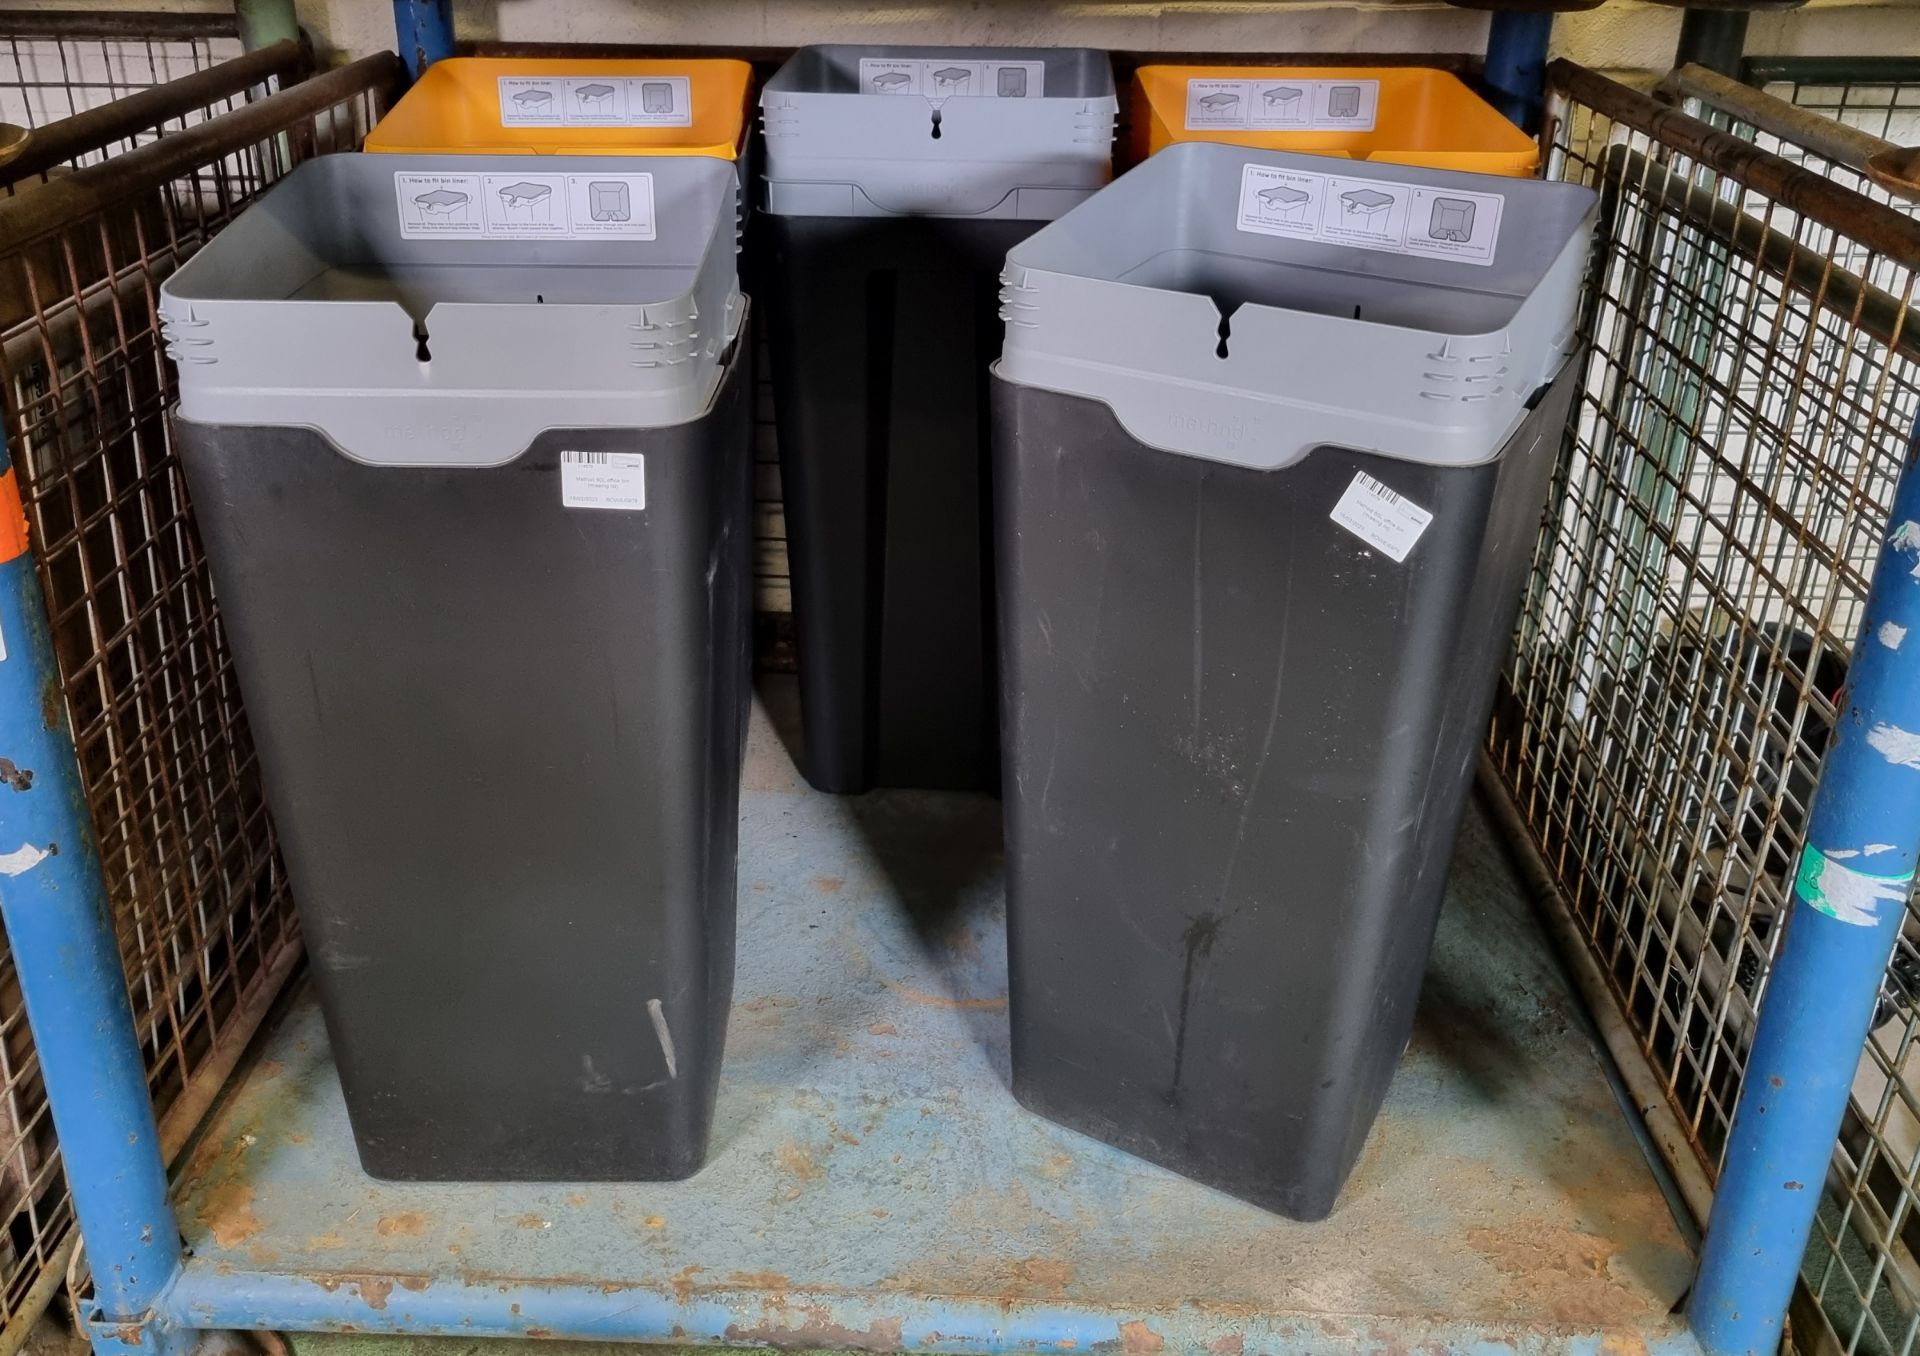 5x Method 60L office bins (missing lids)